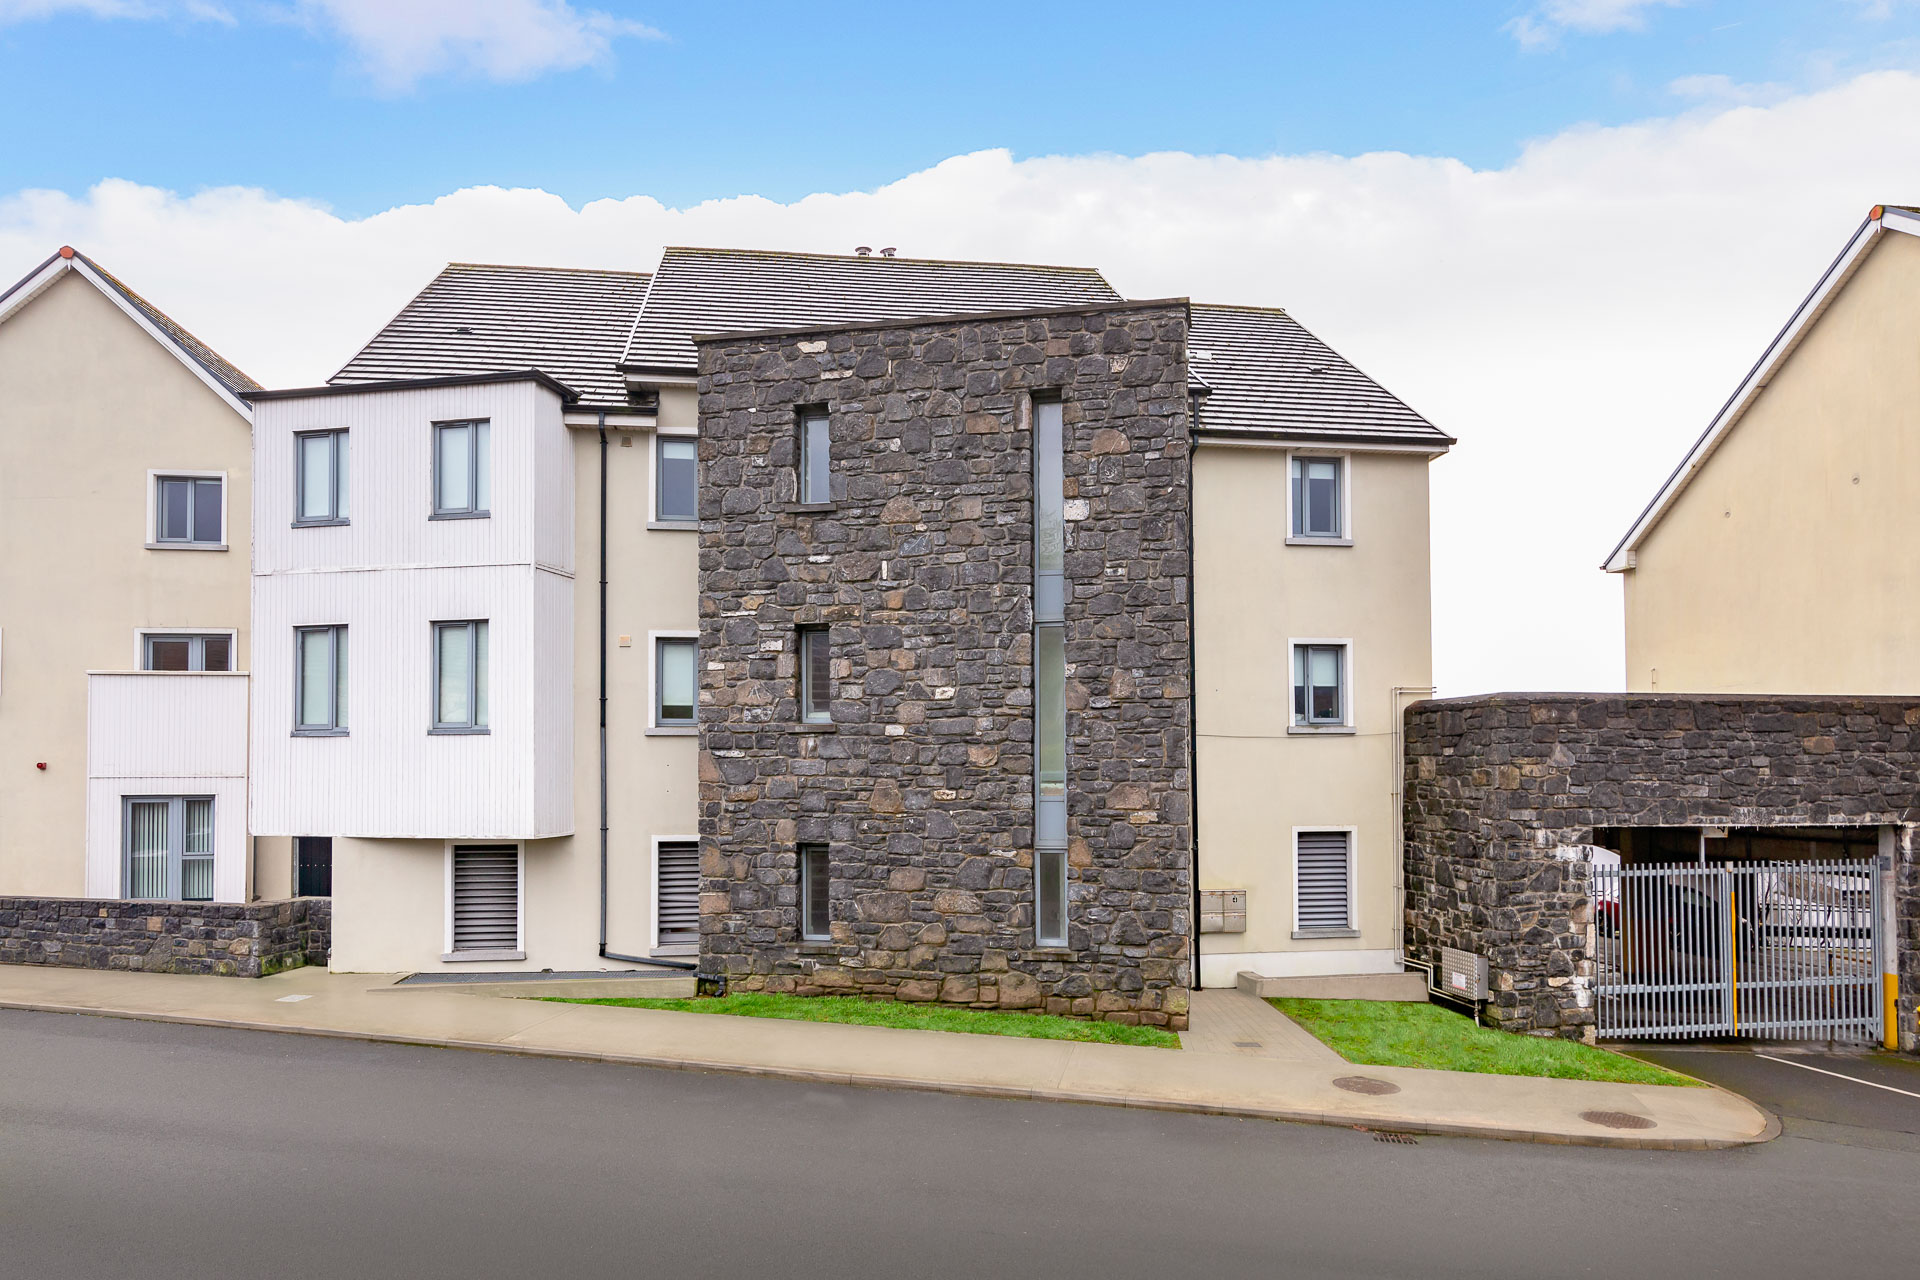 14 Apartments, Ballisodare Town Centre, Ballisodare, Co. Sligo, Ireland